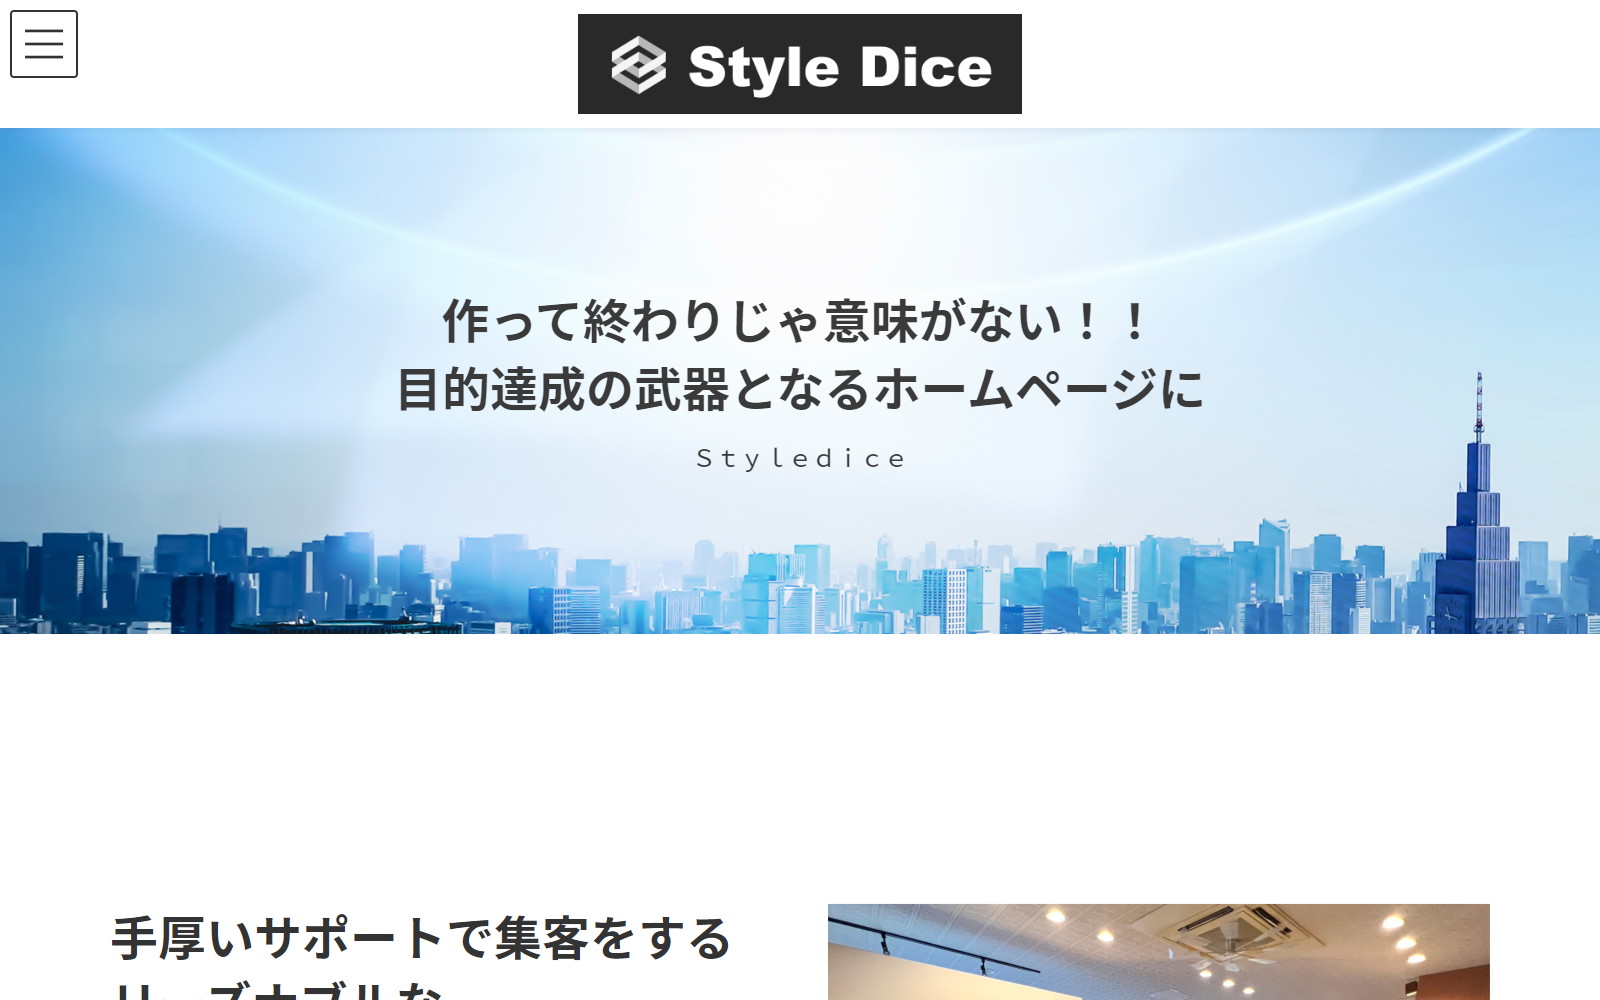 StyleDice